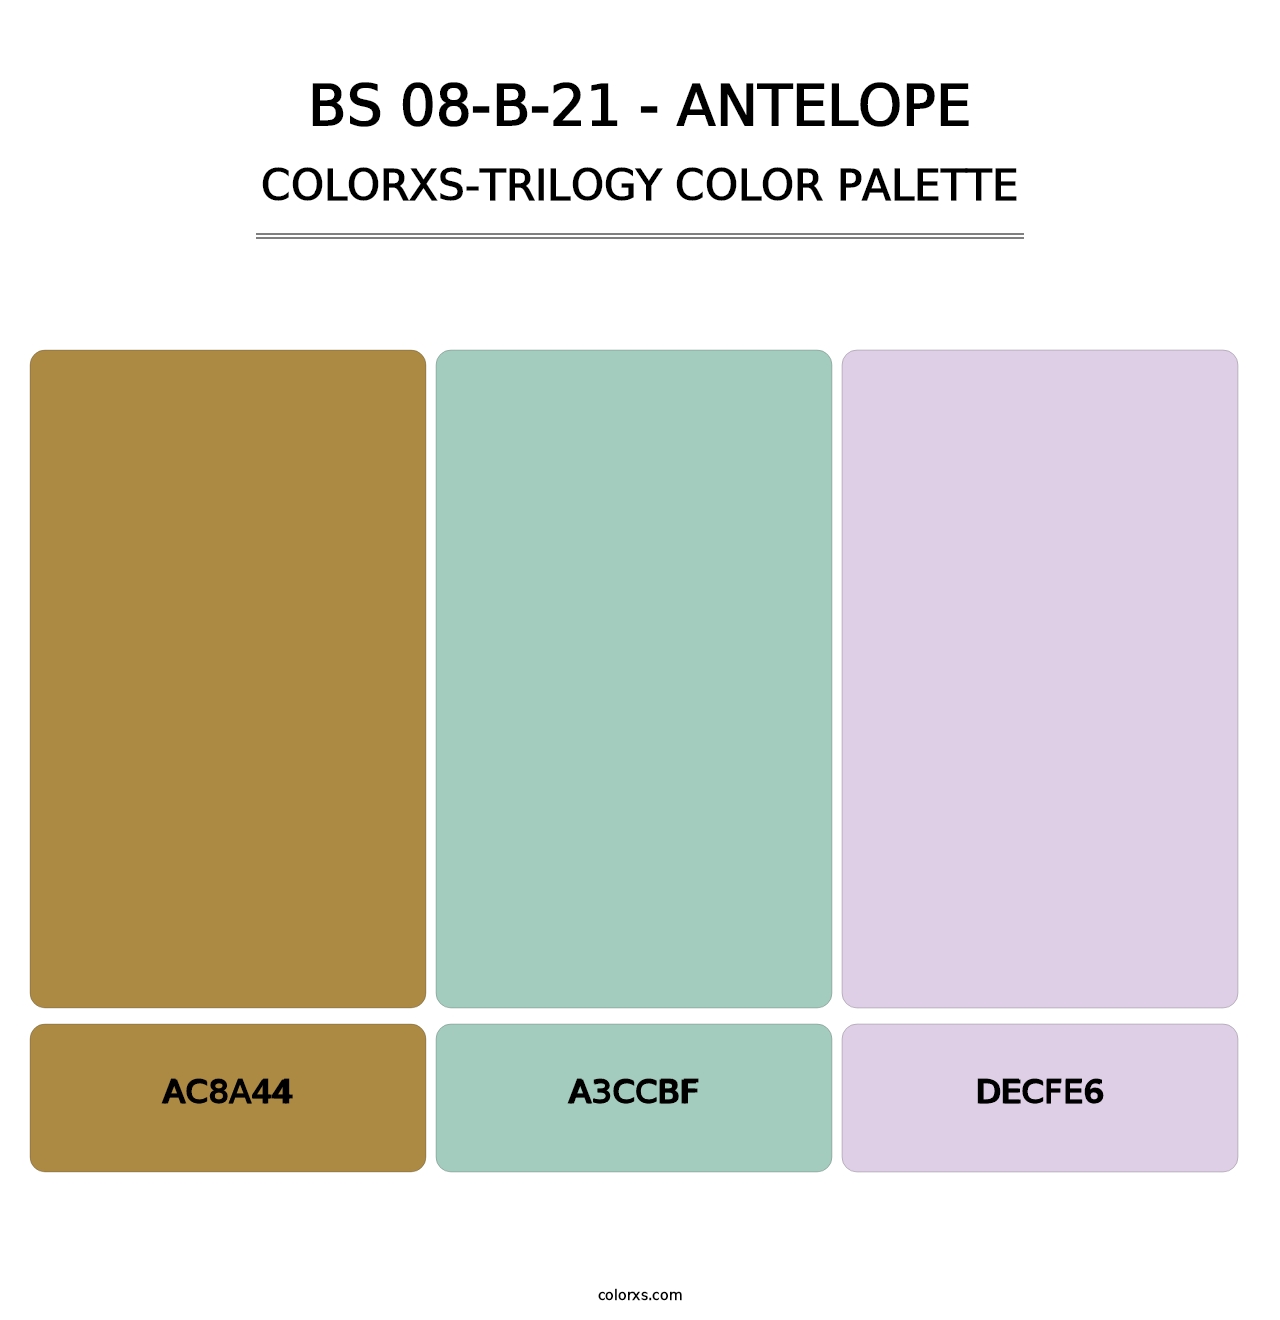 BS 08-B-21 - Antelope - Colorxs Trilogy Palette